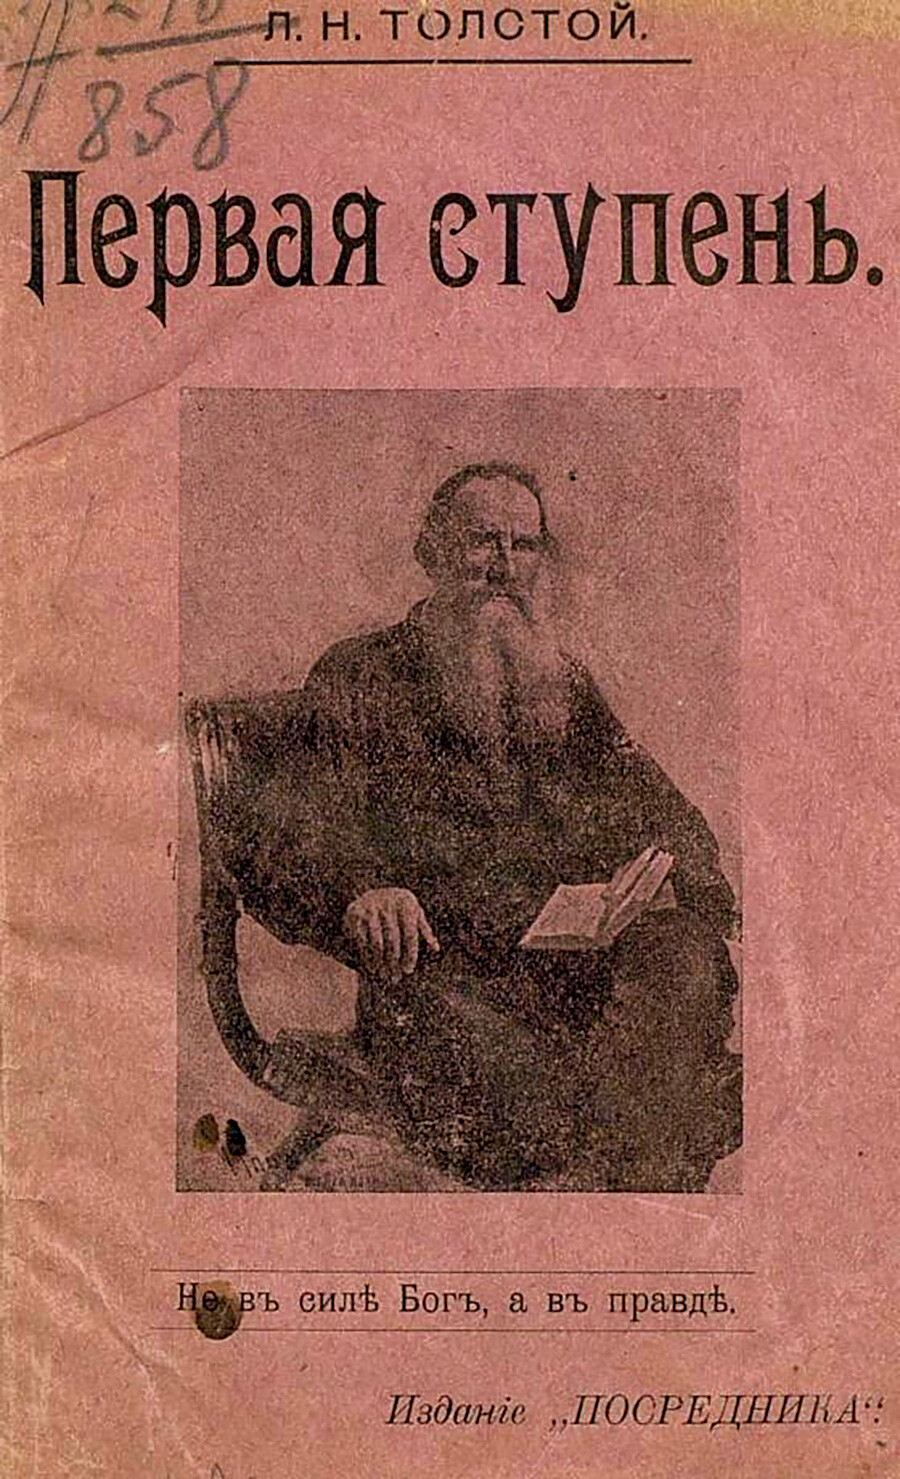 Couverture de La Première étape de Tolstoï